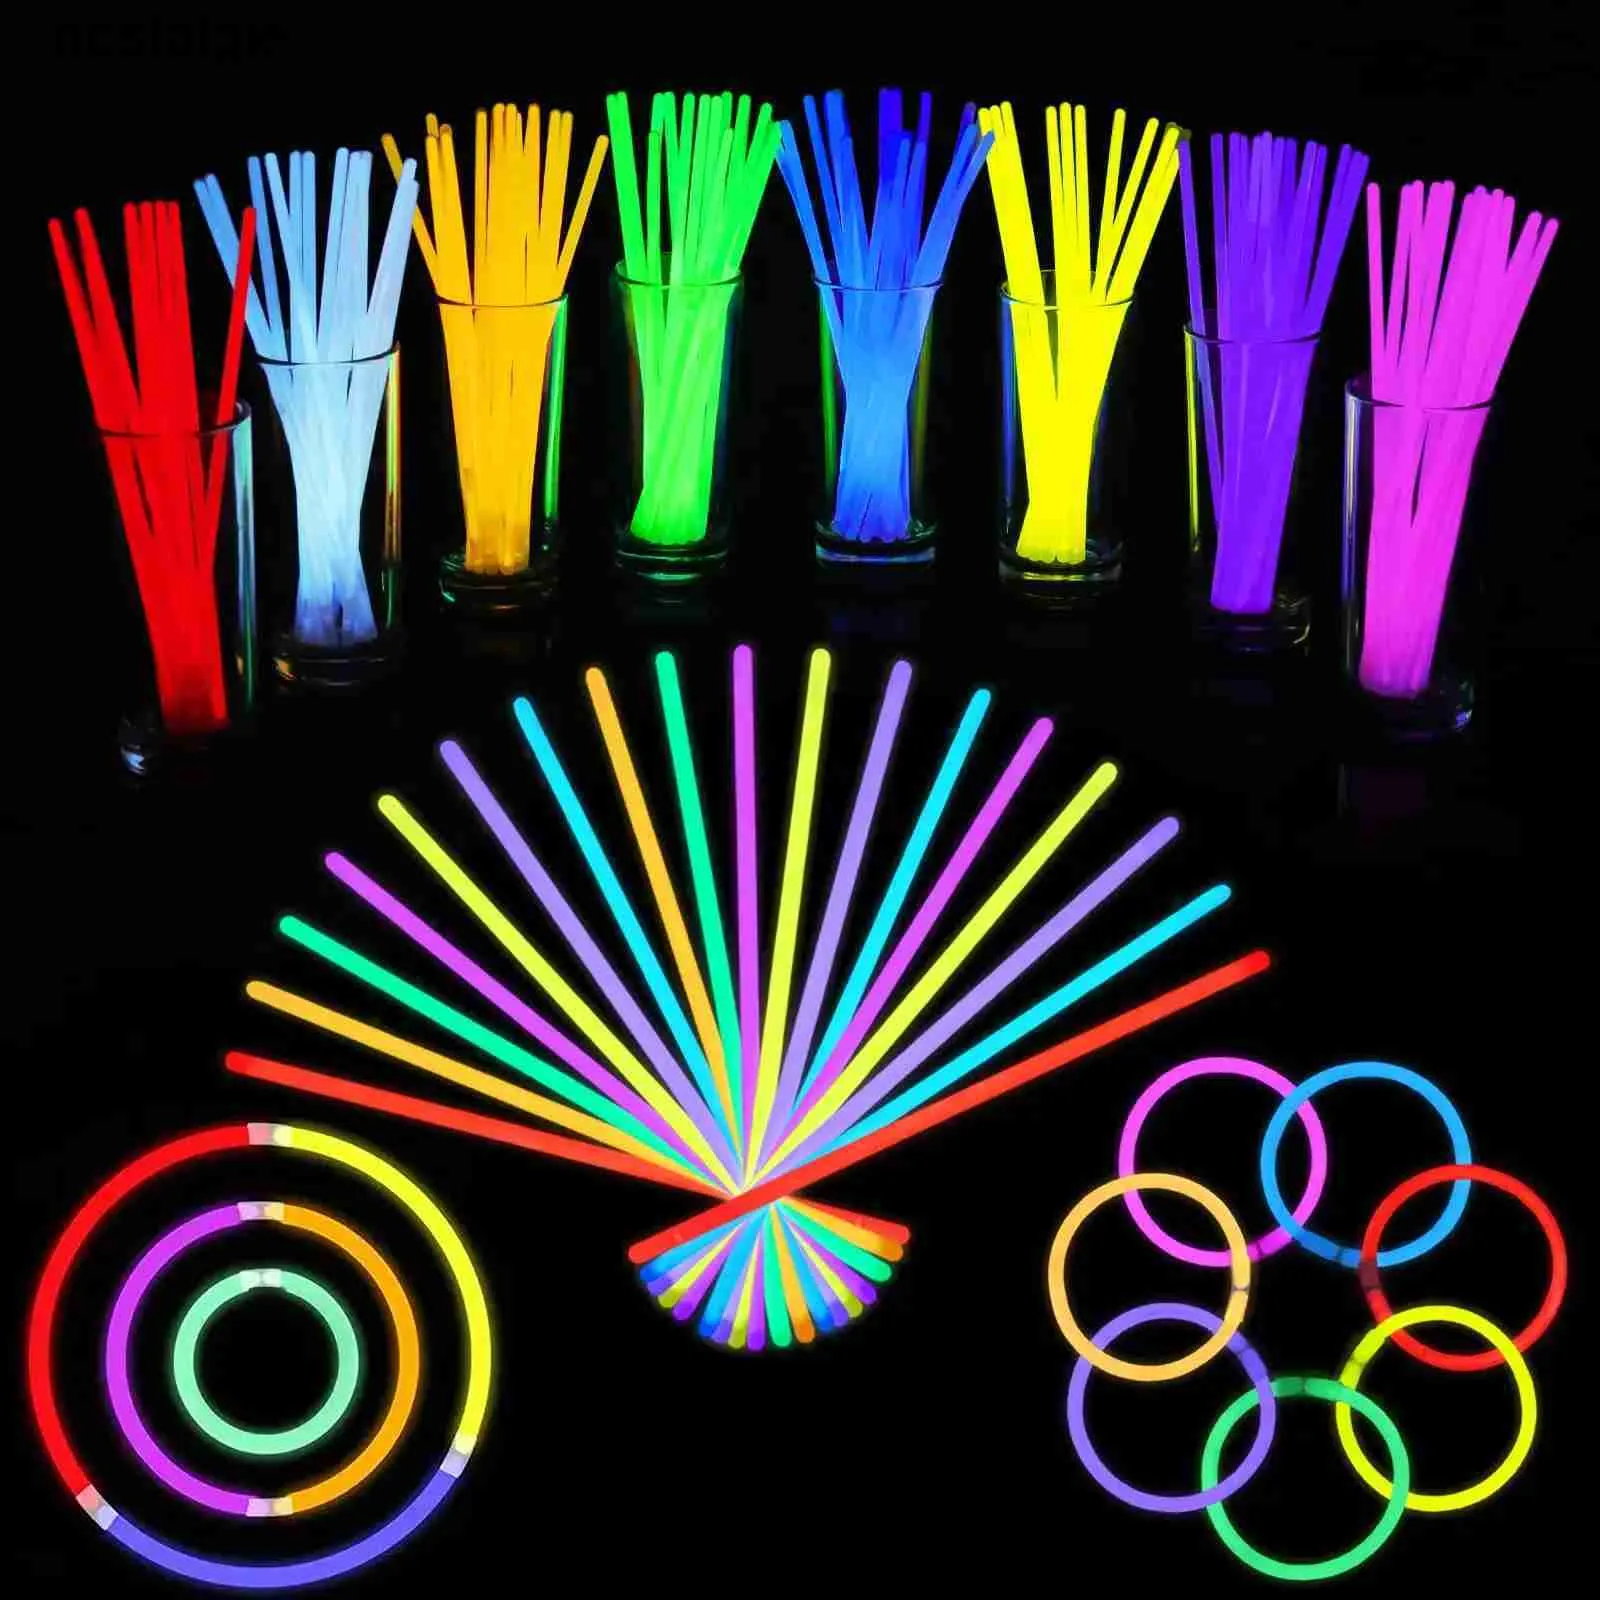 LED Rave Toy Fluoreszenz Glow Sticks Halsketten Armbänder Bulk Party Supplies Sticks Glow Sticks mit Anschlüssen für Neon Party Gefälligkeiten Dekor 240410